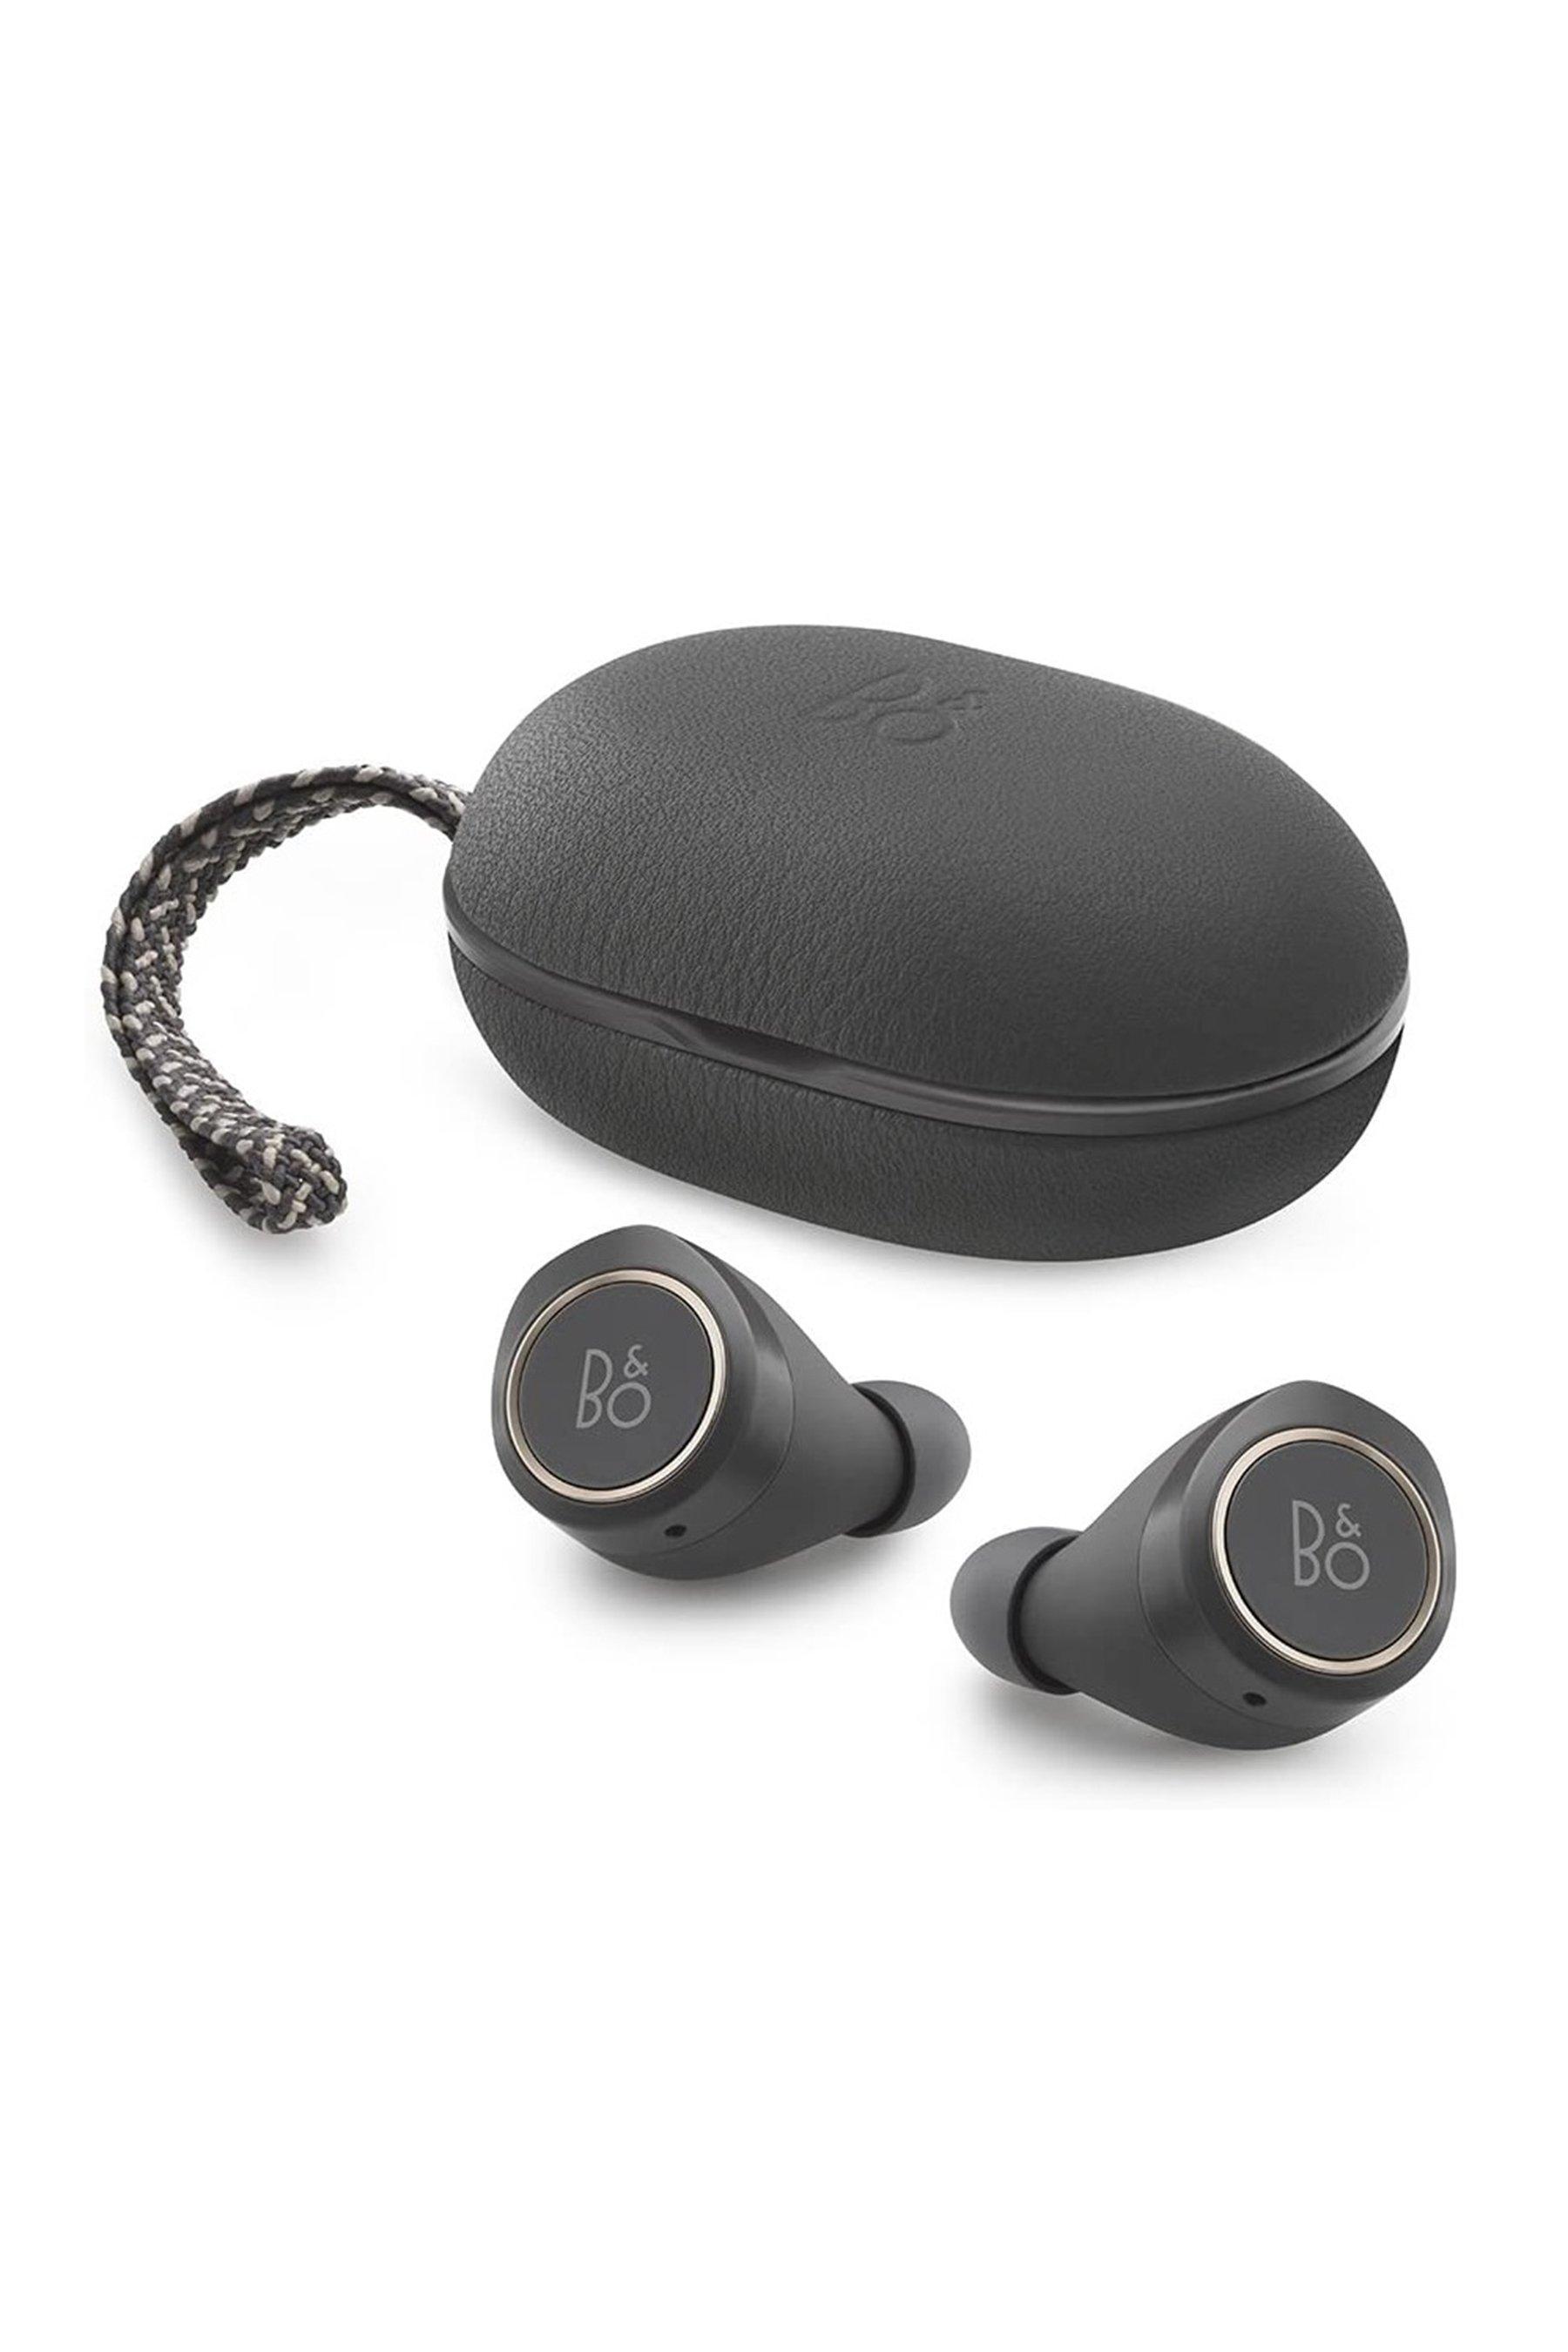 bang and olufsen beoplay e8 1.0 true wireless in-ear earphones - grey